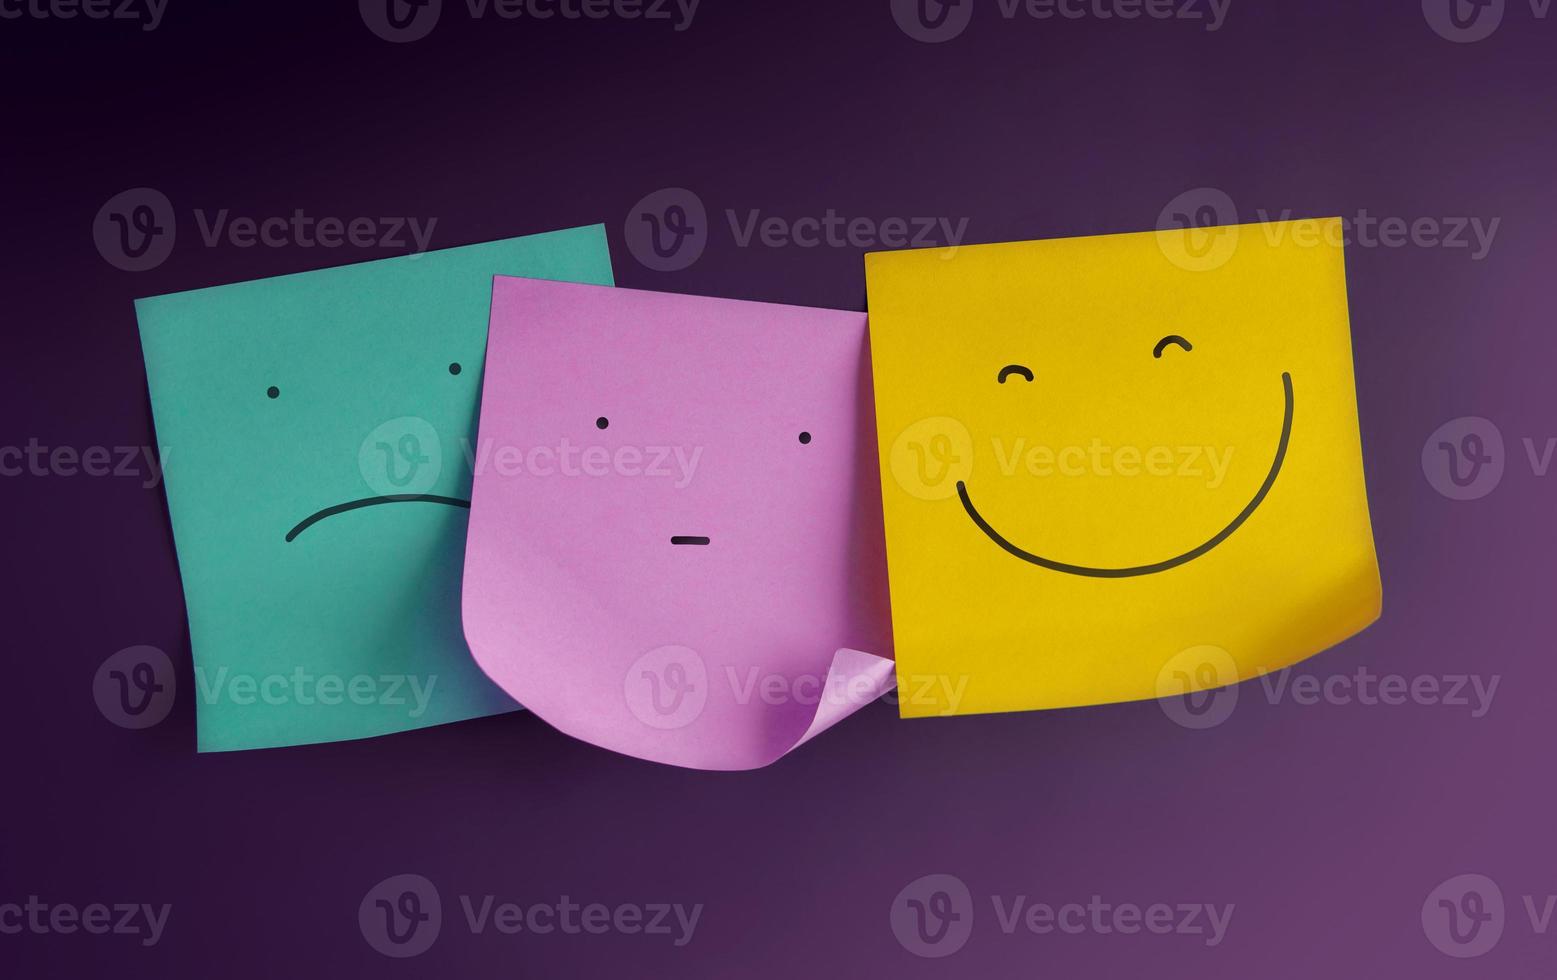 mente, conceito de saúde mental. três rostos de emoticons são exibidos em notas adesivas de negativo a positivo. entediado com o rosto sorridente. estado da emoção humana foto